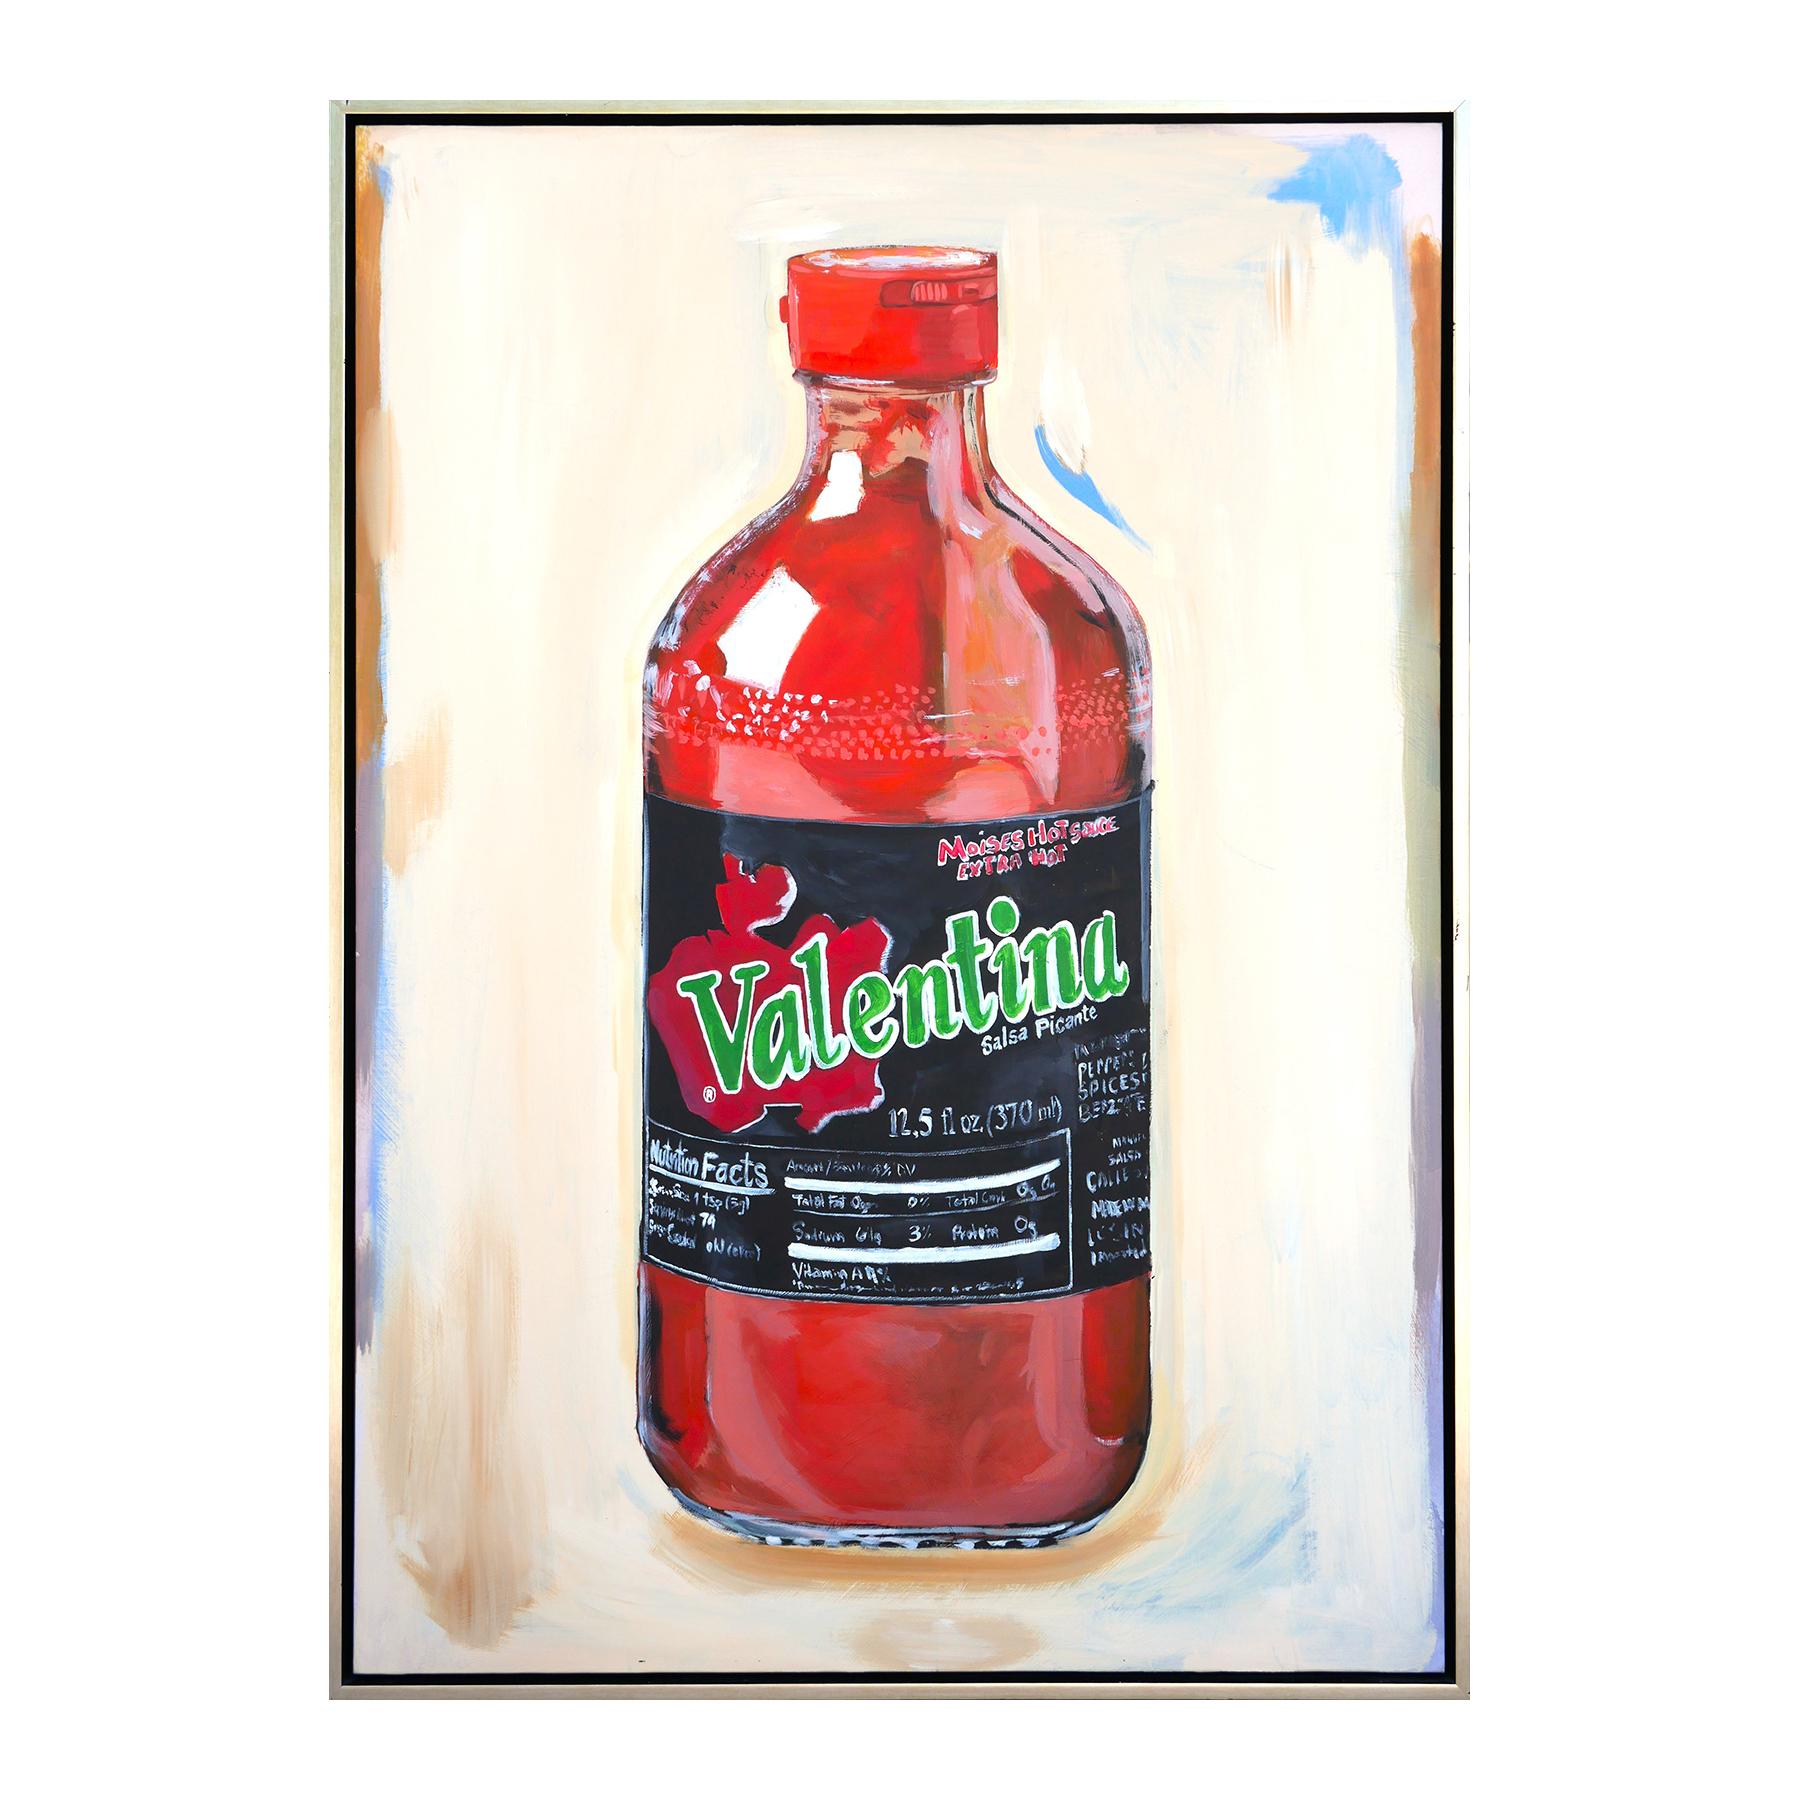 Realistisches Stillleben einer Flasche mit heißer Sauce des zeitgenössischen Künstlers Moisés Villafuerte aus Houston. Das Werk zeigt eine detaillierte Darstellung einer Valentina Hot Sauce Flasche vor einem hellbraunen Hintergrund. Derzeit in einem